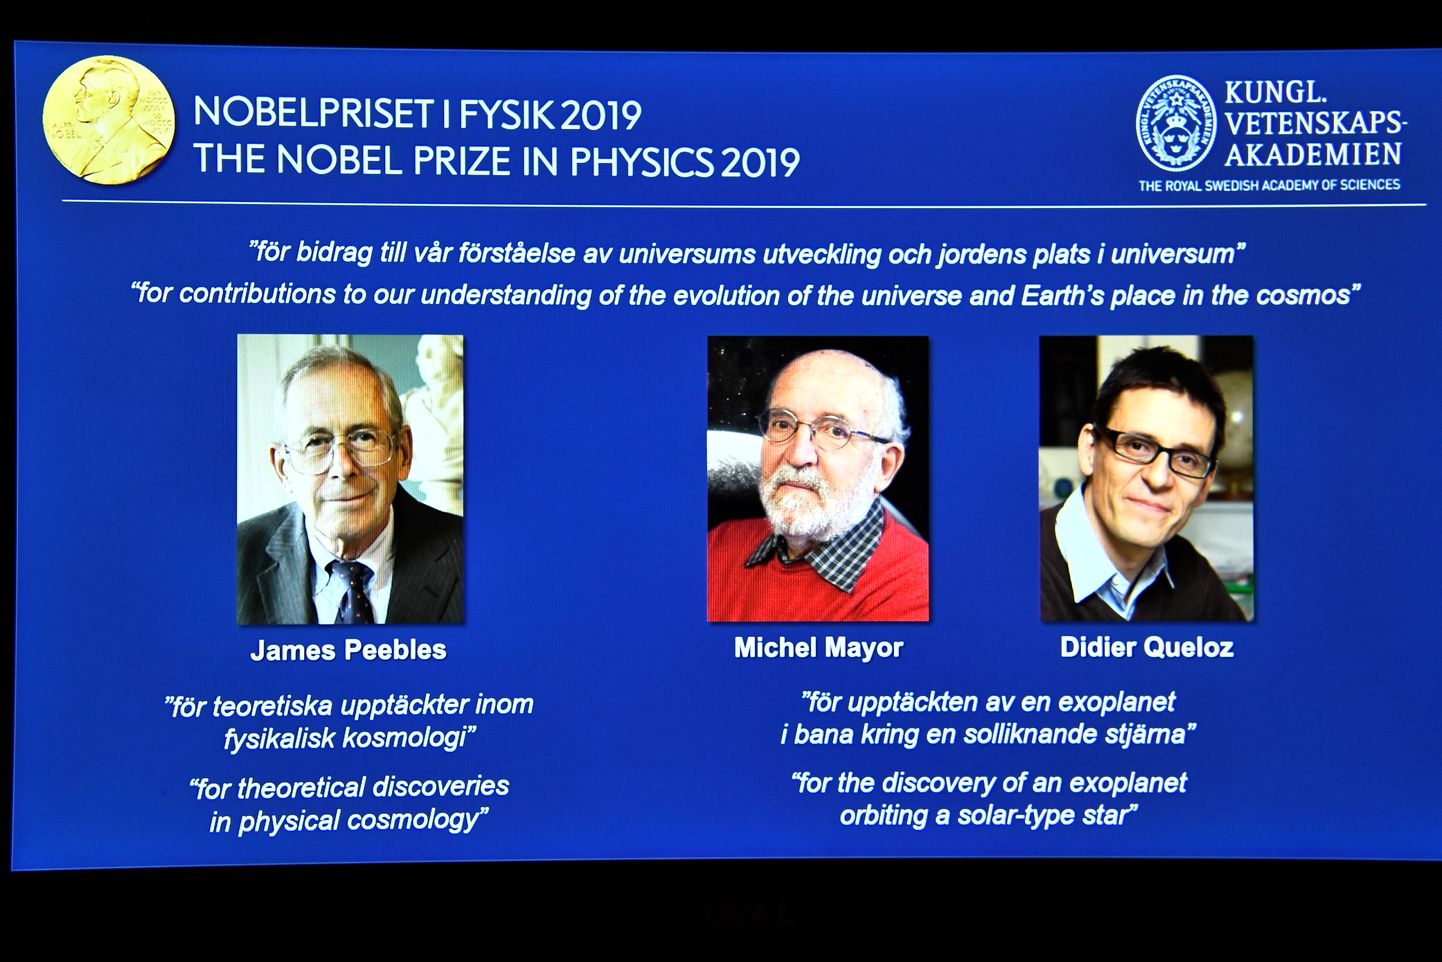 Нобелевская премия по физике в 2019 году будет вручена Джеймсу Пиблсу - за теоретические открытия в области физической космологии, а также Мишелю Майору и Дидье Кело - за открытие экзопланеты, вращающейся вокруг звезды солнечного типа.